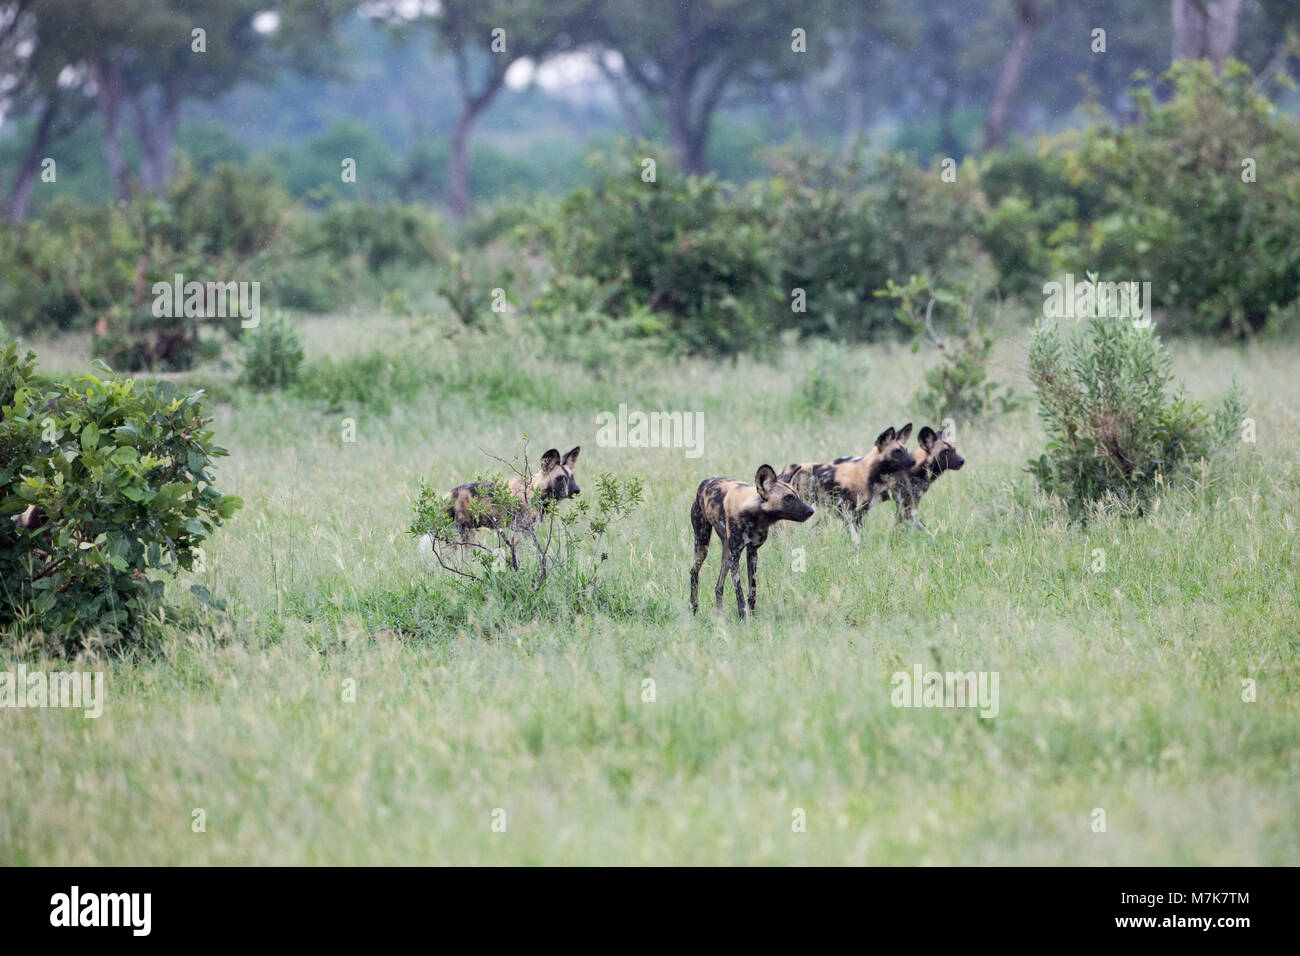 Afrikanische Jagd Hund, Afrikanischer Wildhund, oder gemalten Hund oder Wolf, lackiert (Lycaon pictus). Pack Mitglieder positionieren sich um Bush Abdeckung, bereit, t Stockfoto